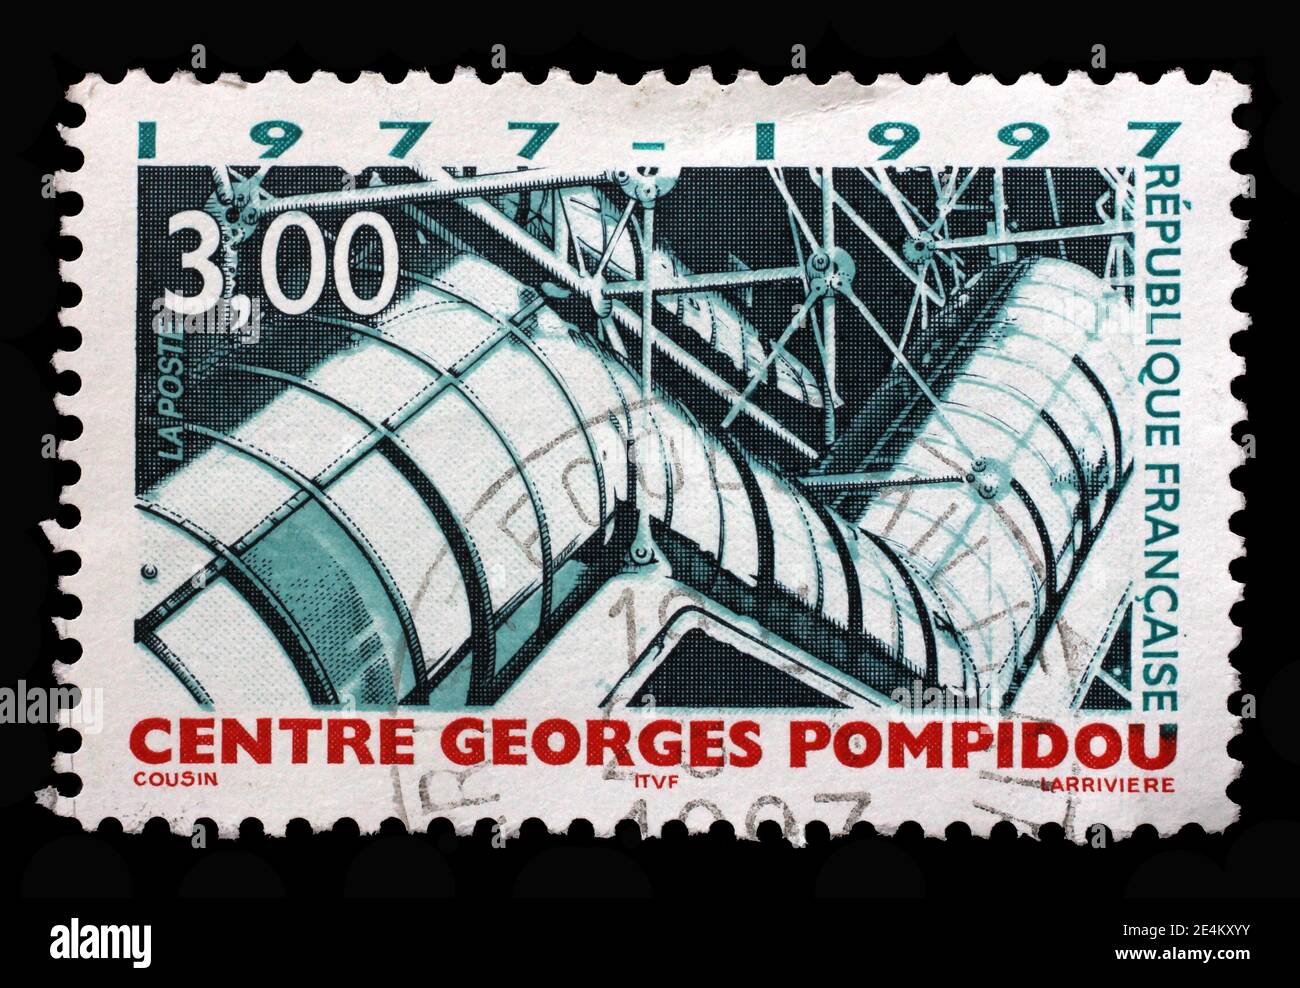 Francia 1993 Pompidou buen par de sellos muy finos montados sin montar o nunca montados imperf $72 P5463 